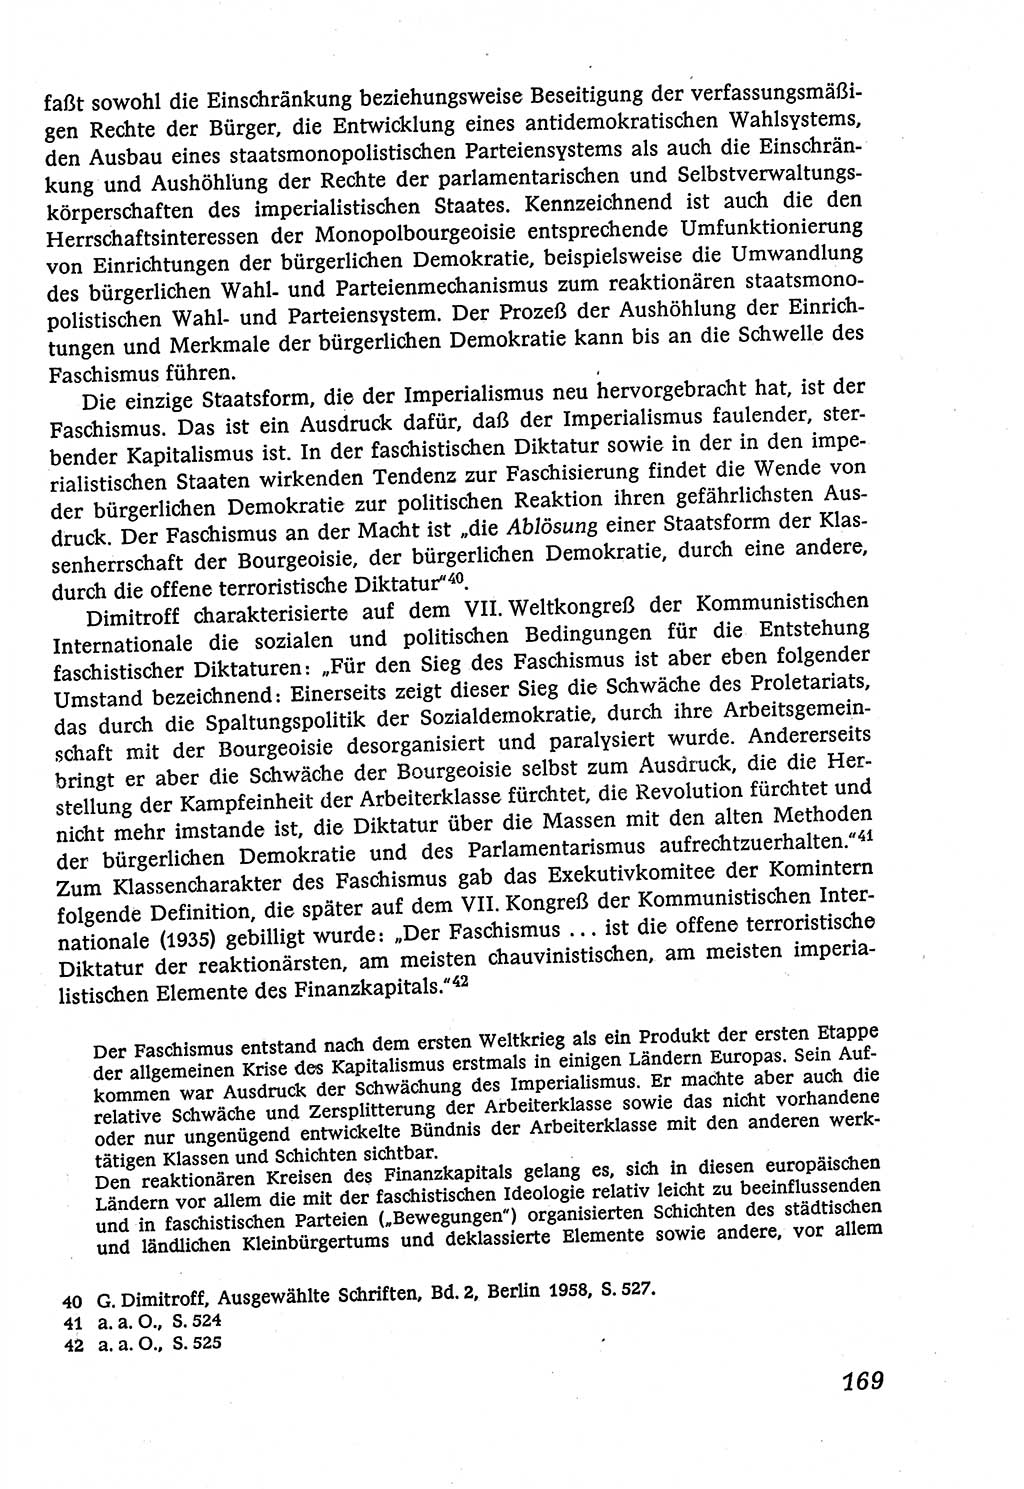 Marxistisch-leninistische (ML) Staats- und Rechtstheorie [Deutsche Demokratische Republik (DDR)], Lehrbuch 1980, Seite 169 (ML St.-R.-Th. DDR Lb. 1980, S. 169)